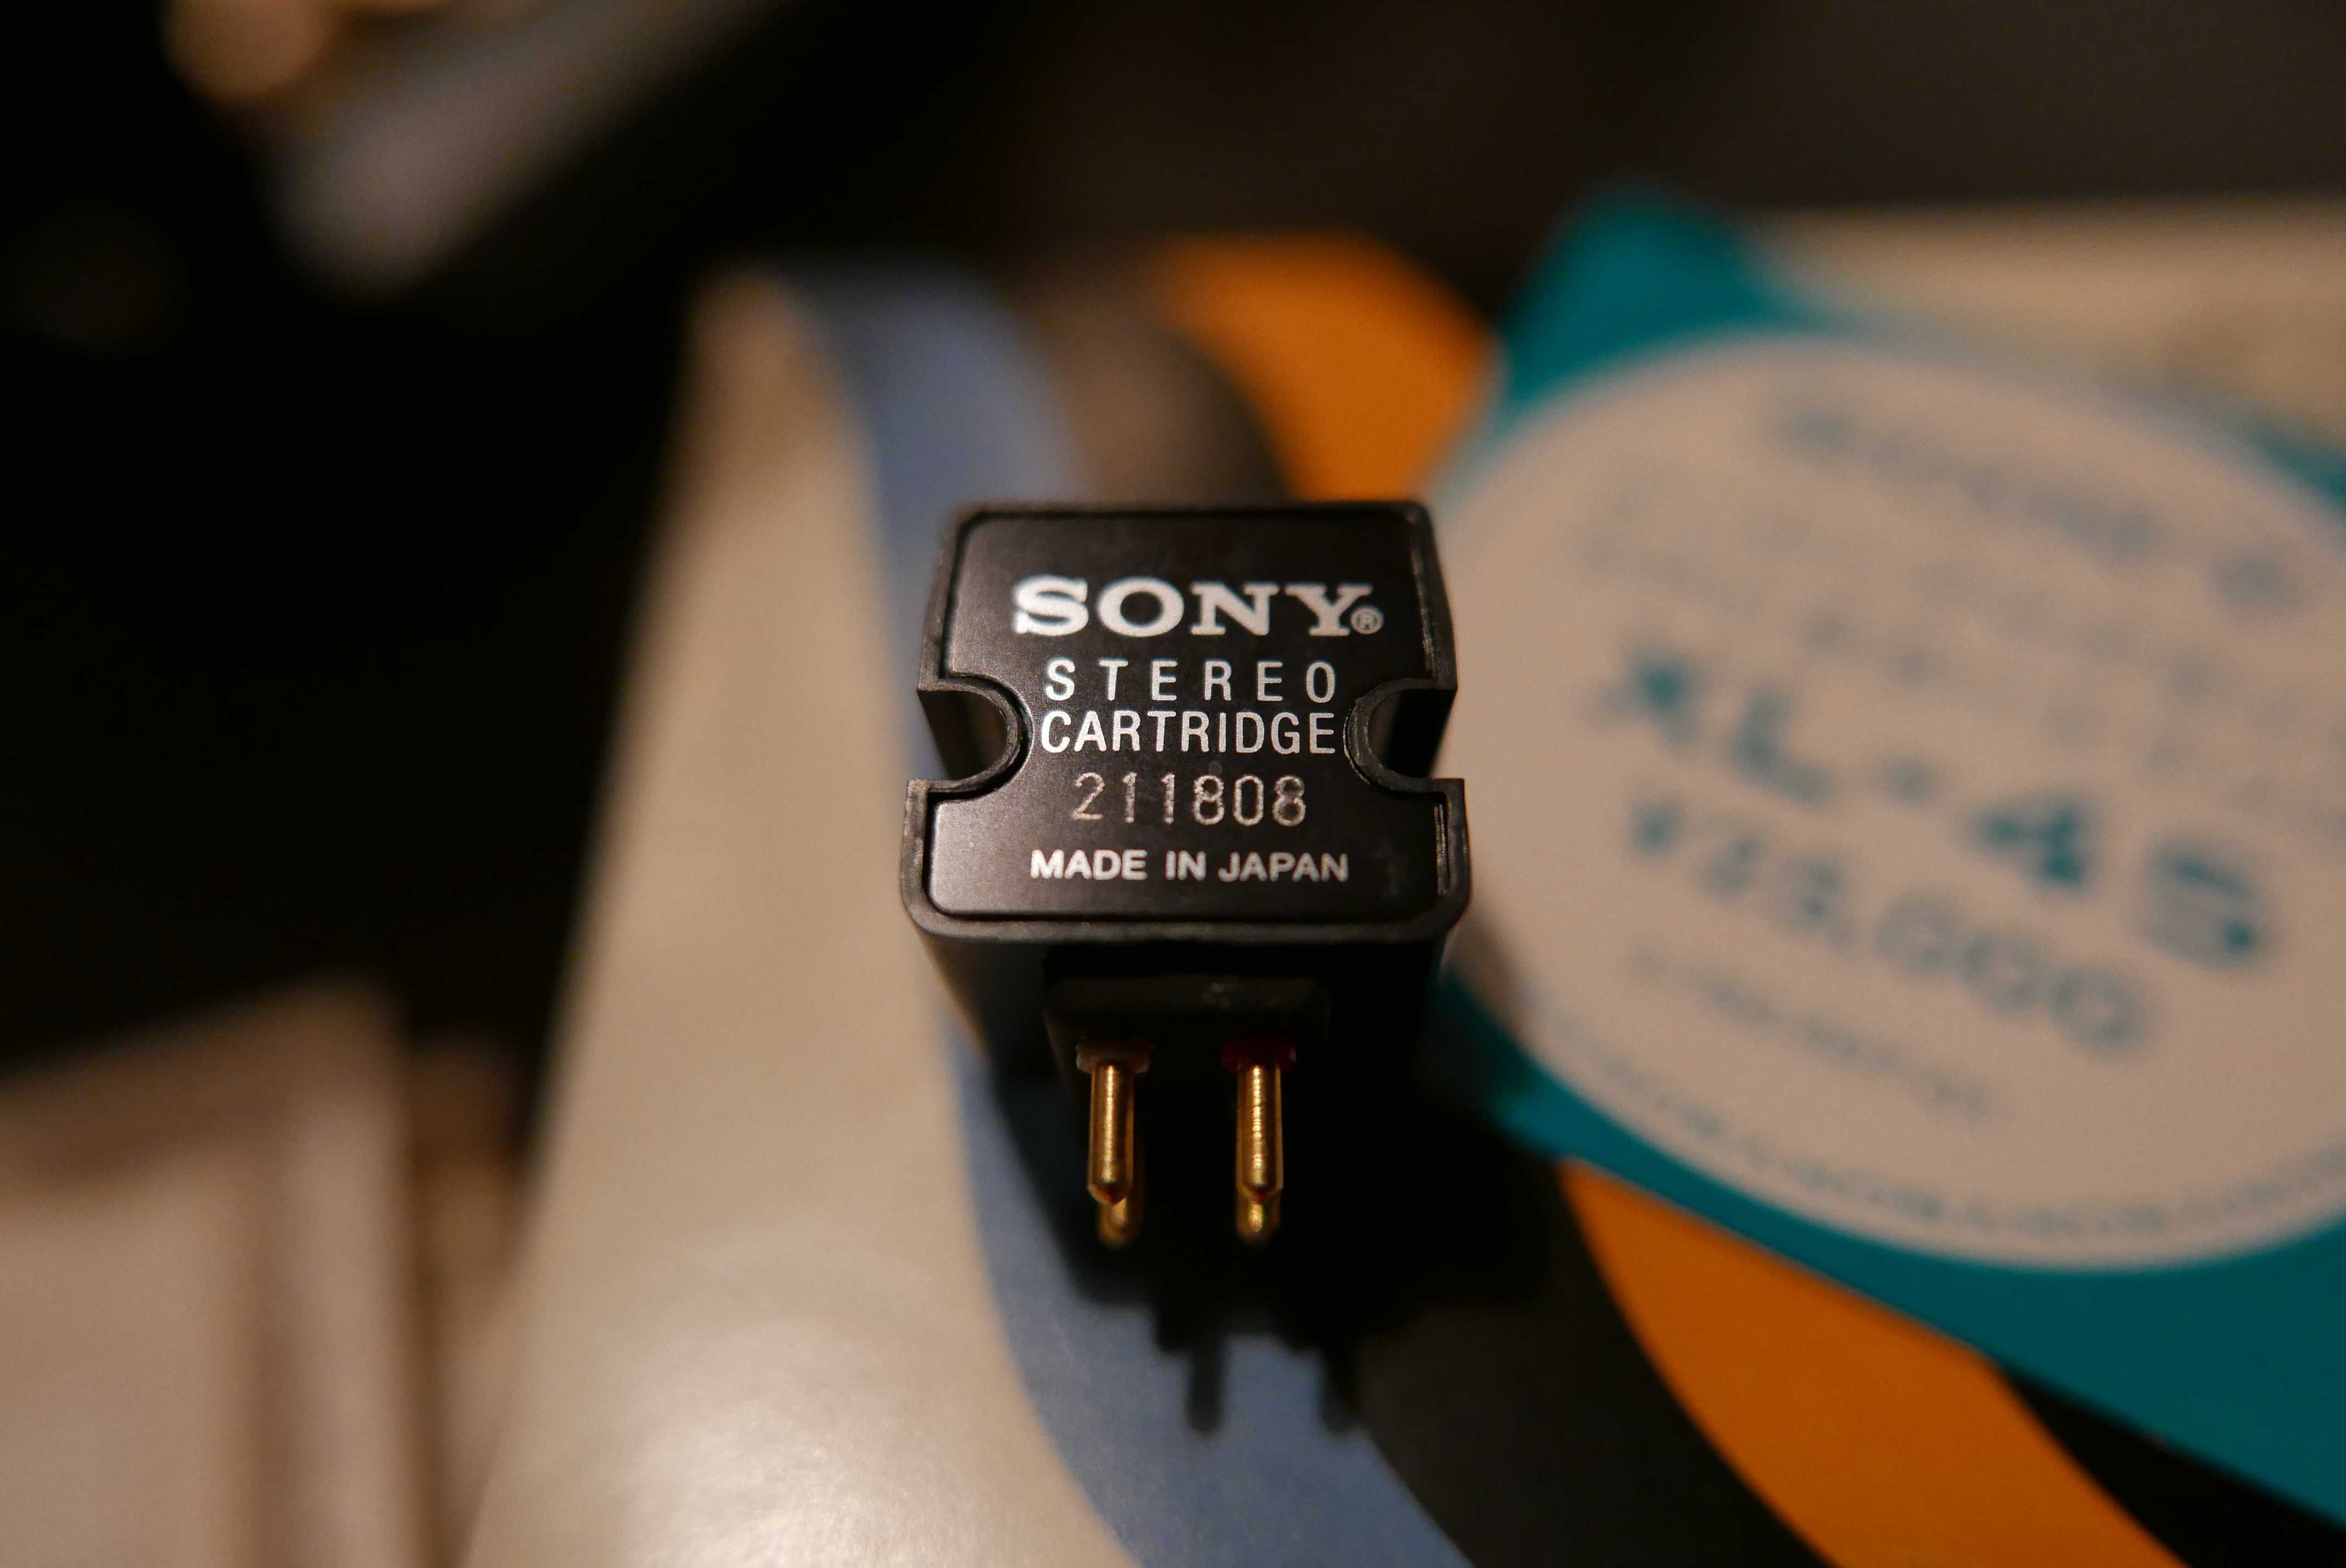 Sony XL-45 Sony ND-35E Nude (doza MM pick-up ac doza Sony)